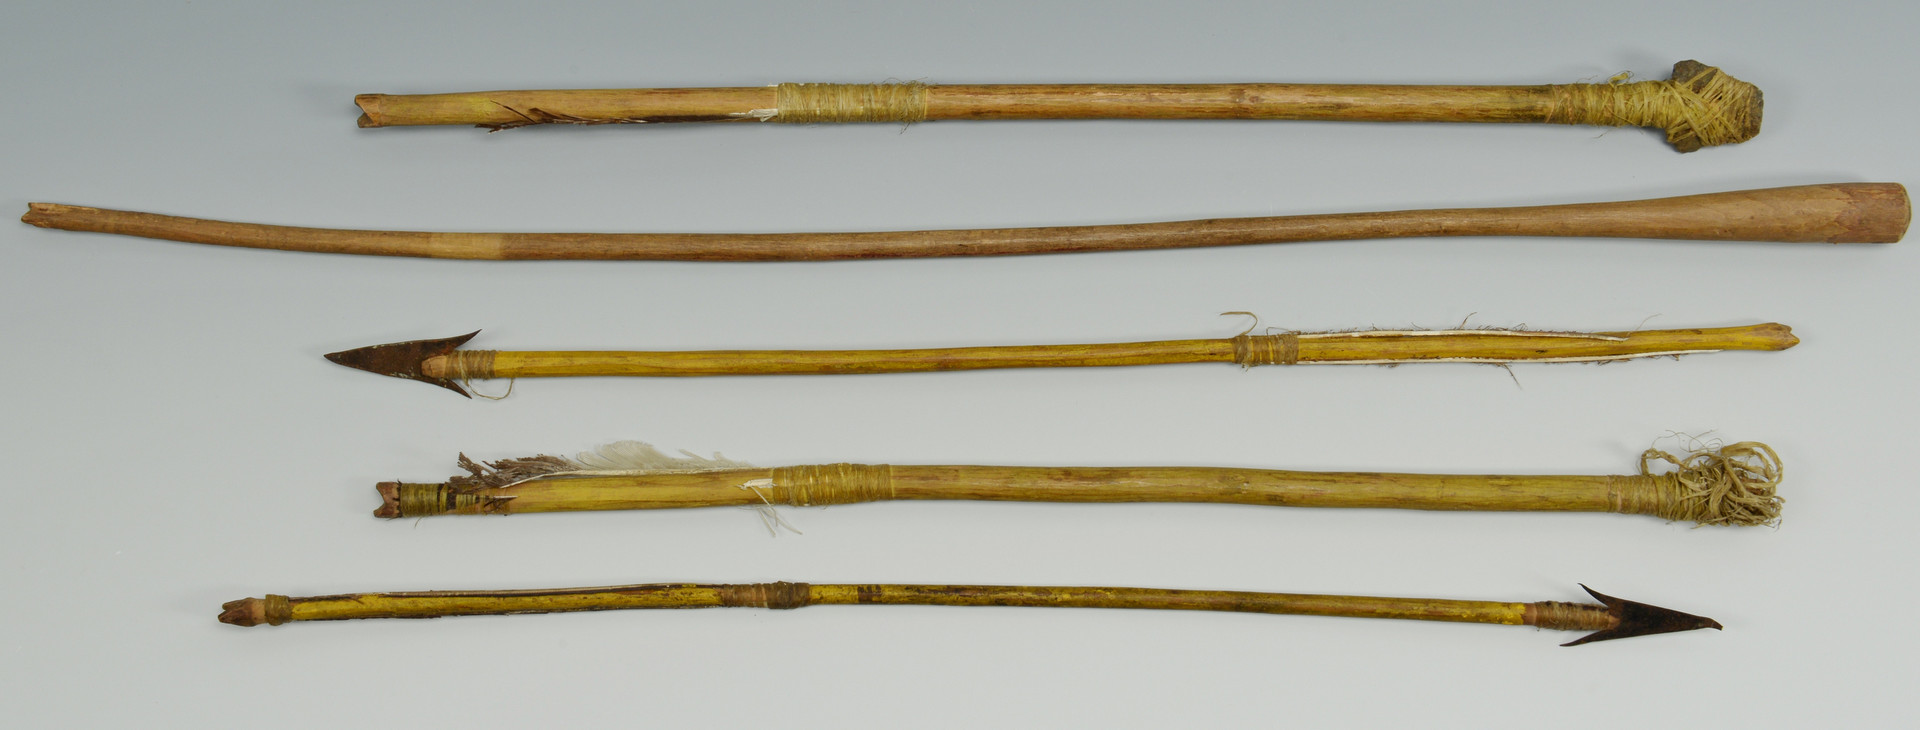 Lot 327: Plains Indian Quiver, Bows, Arrows